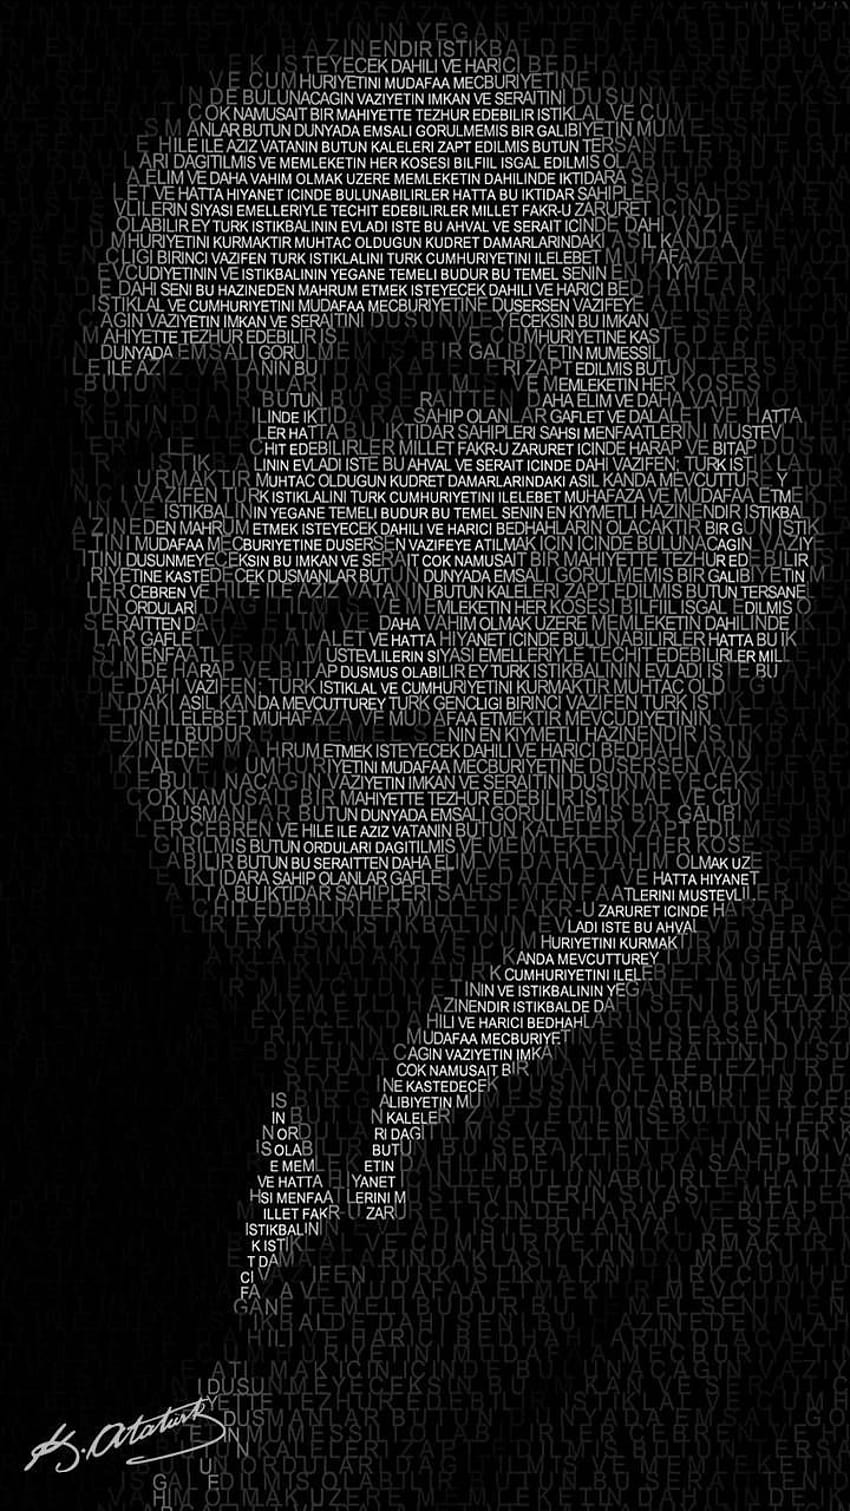 Ataturk by jokerstart, ataturk iphone HD phone wallpaper